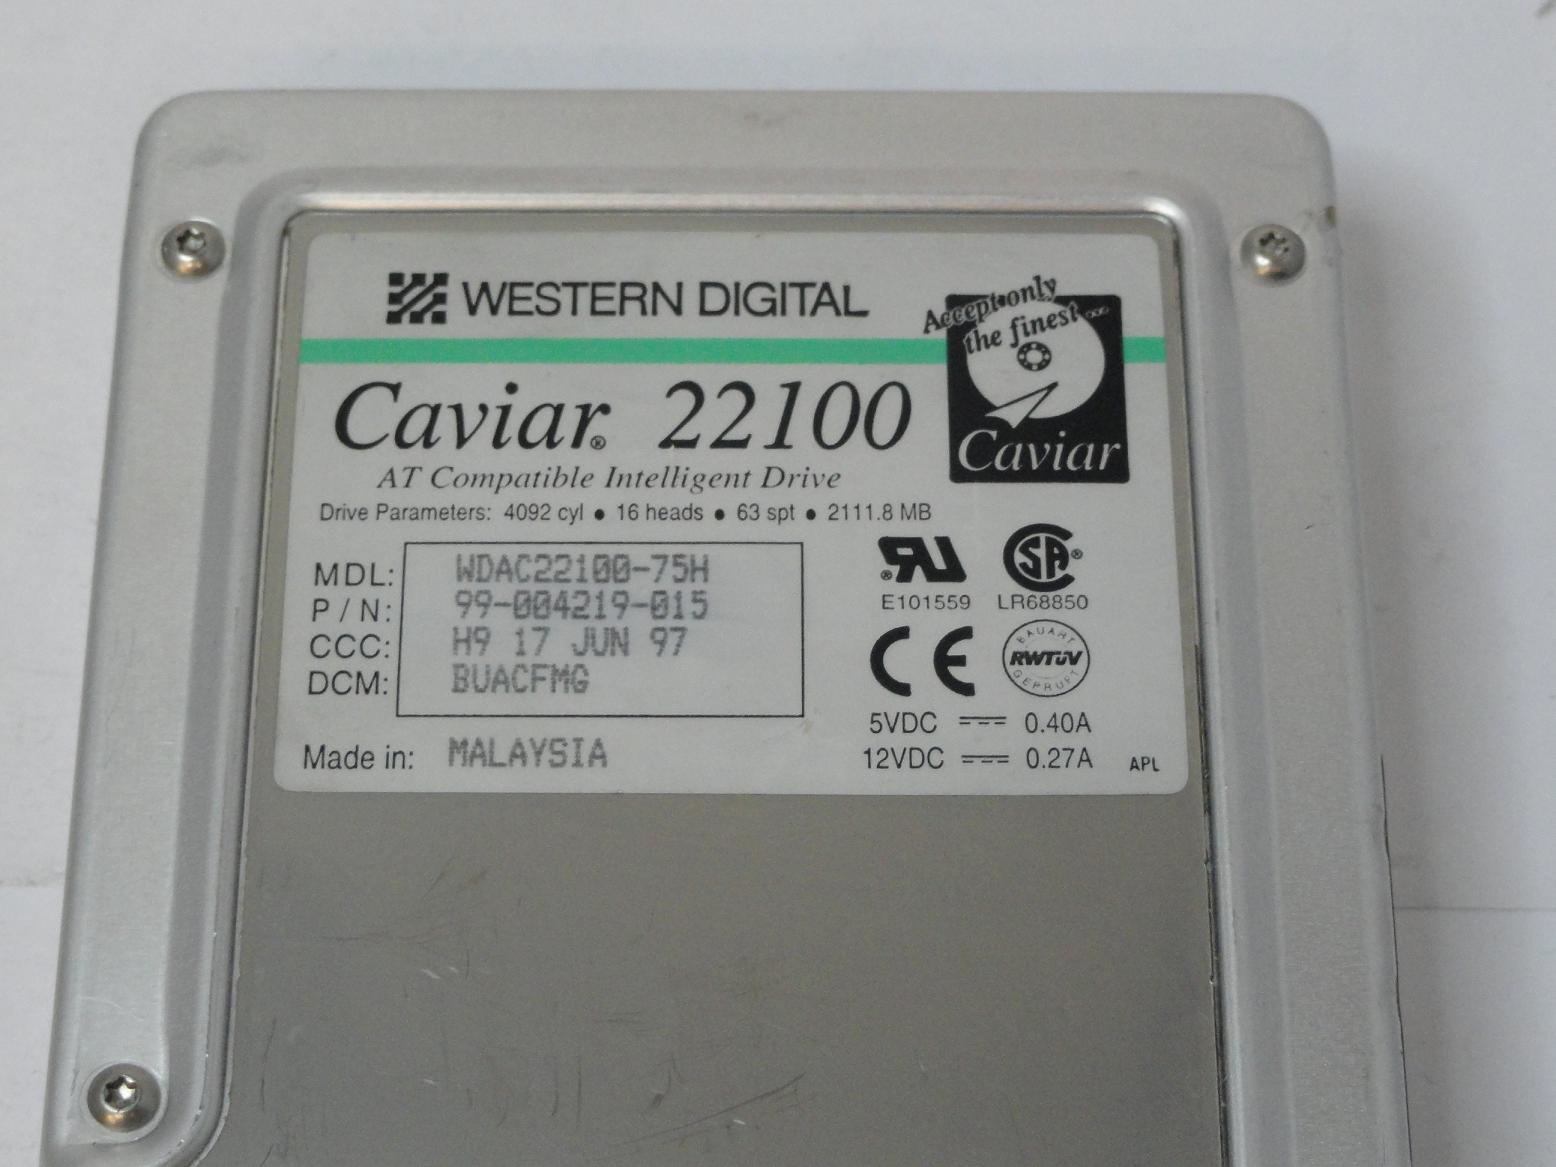 MC6025_99-004219-015_Western Digital 2.1GB IDE 5400rpm 3.5in HDD - Image3